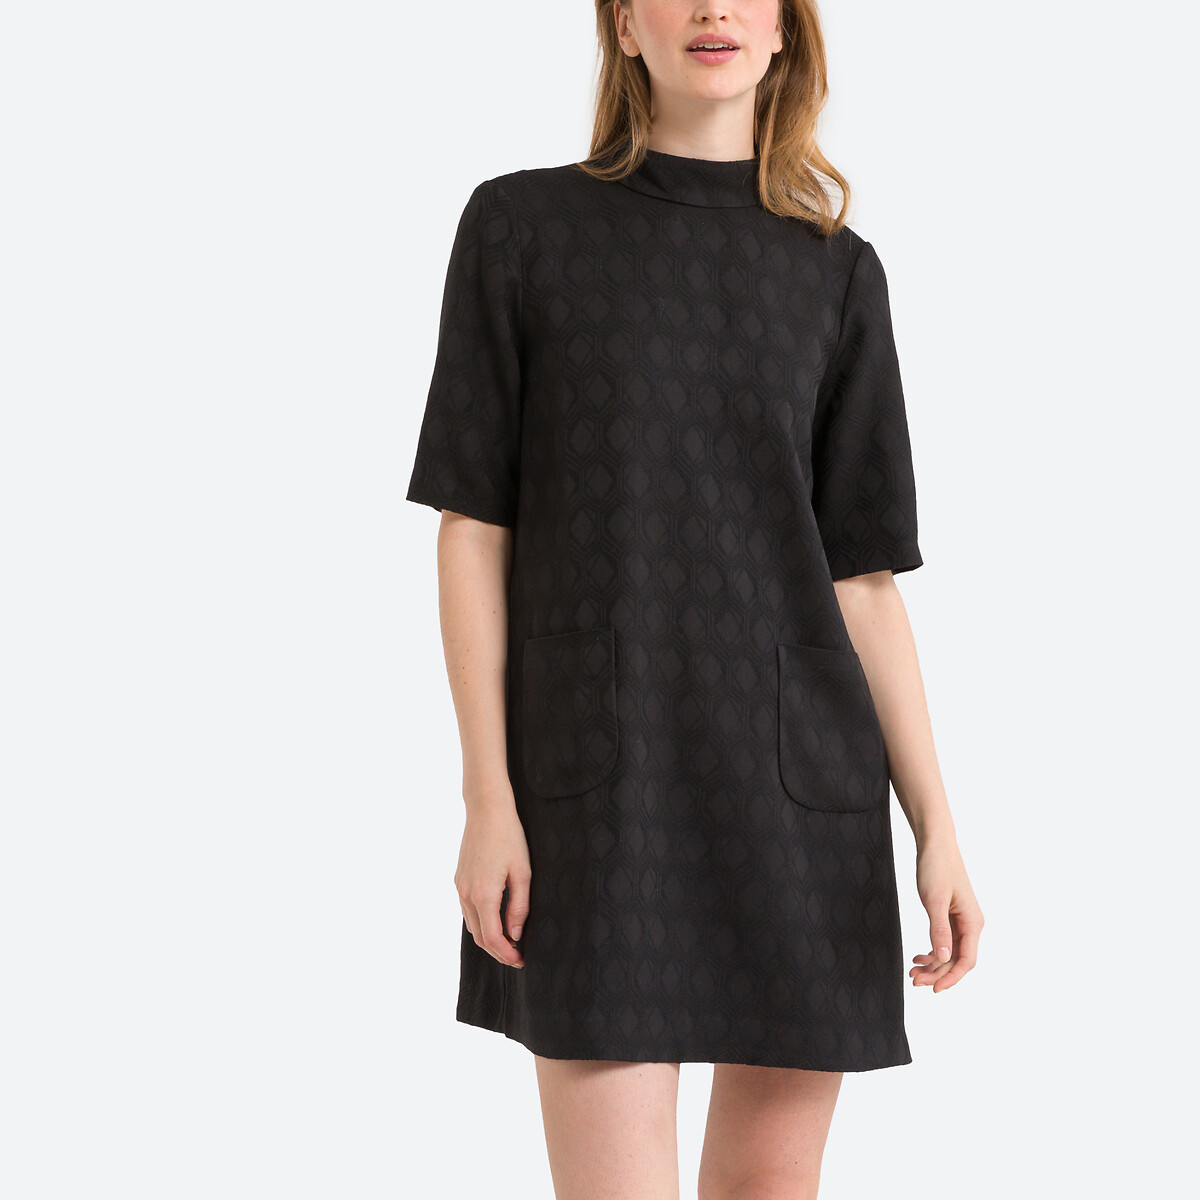 Платье Прямое короткое с жаккардовым принтом Mellie 0(XS) черный